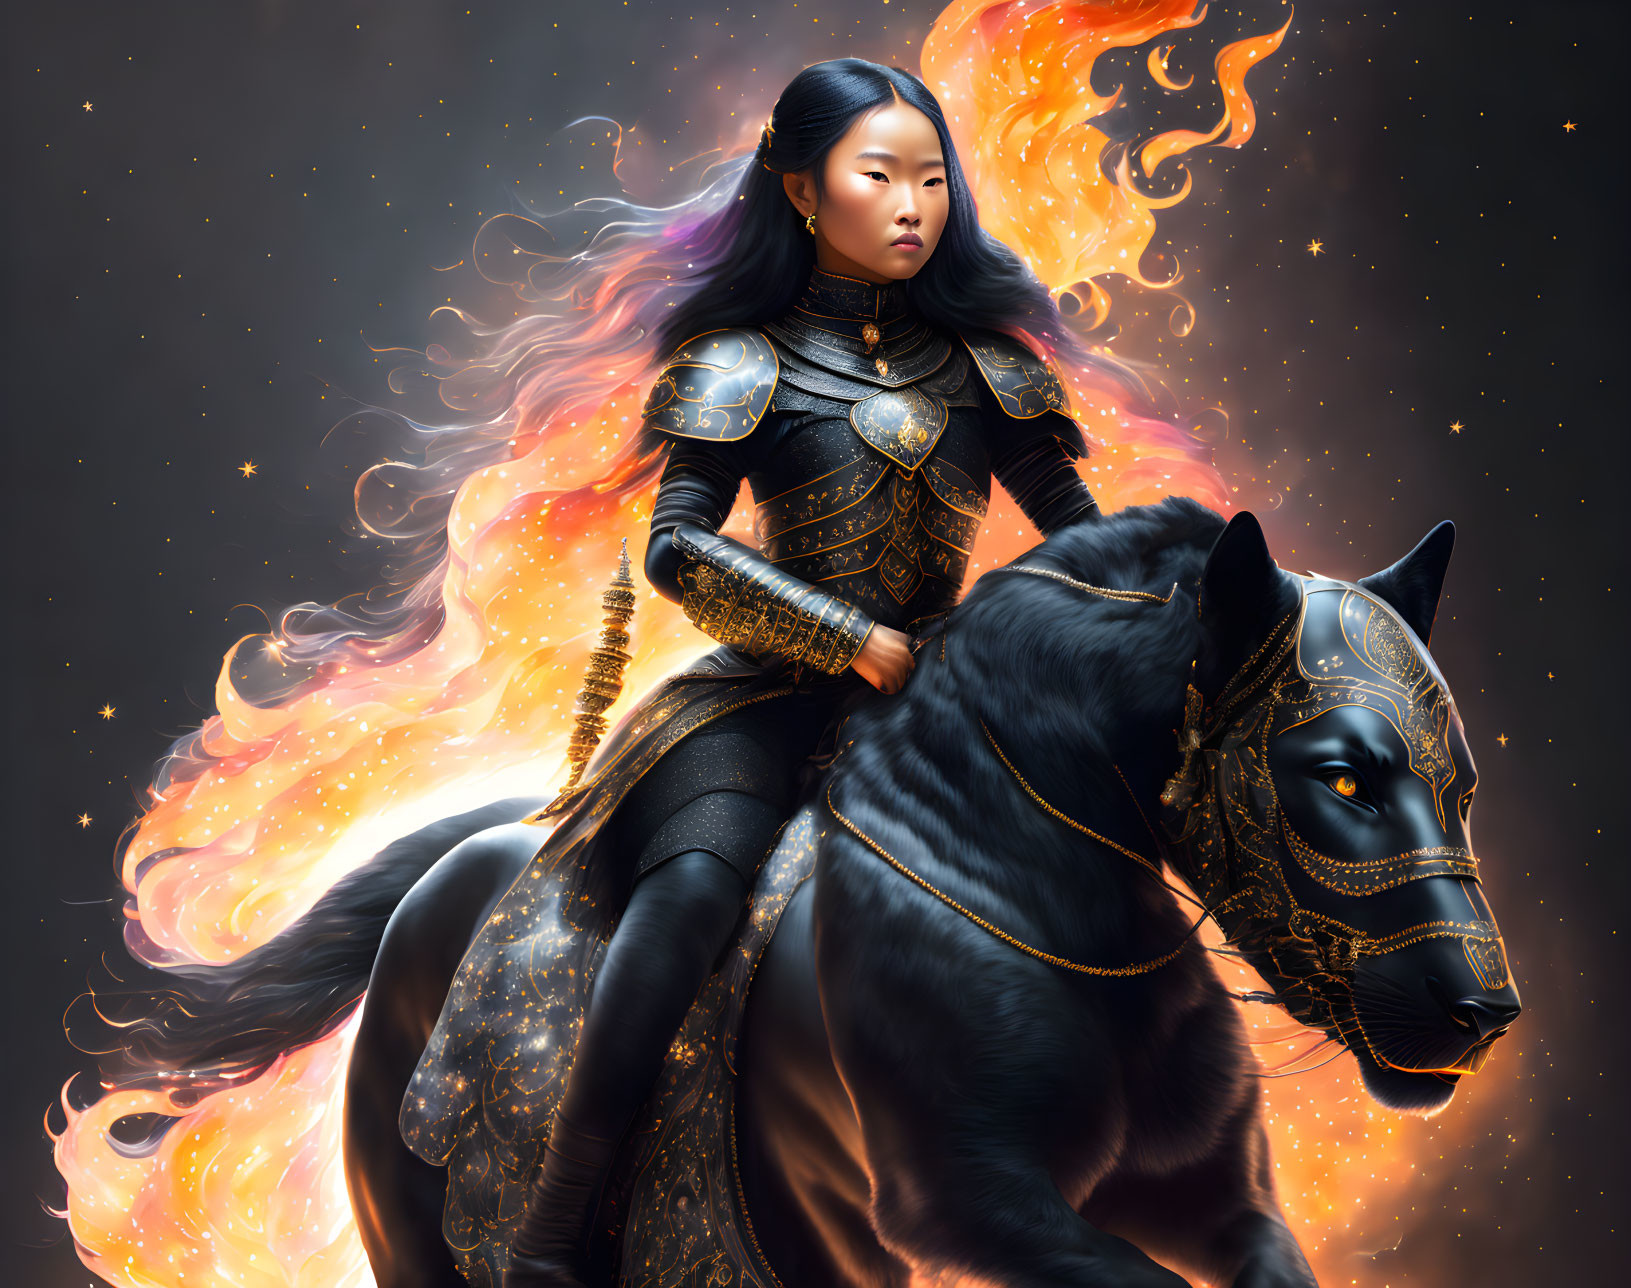 Mongolian princess riding a panther-horse